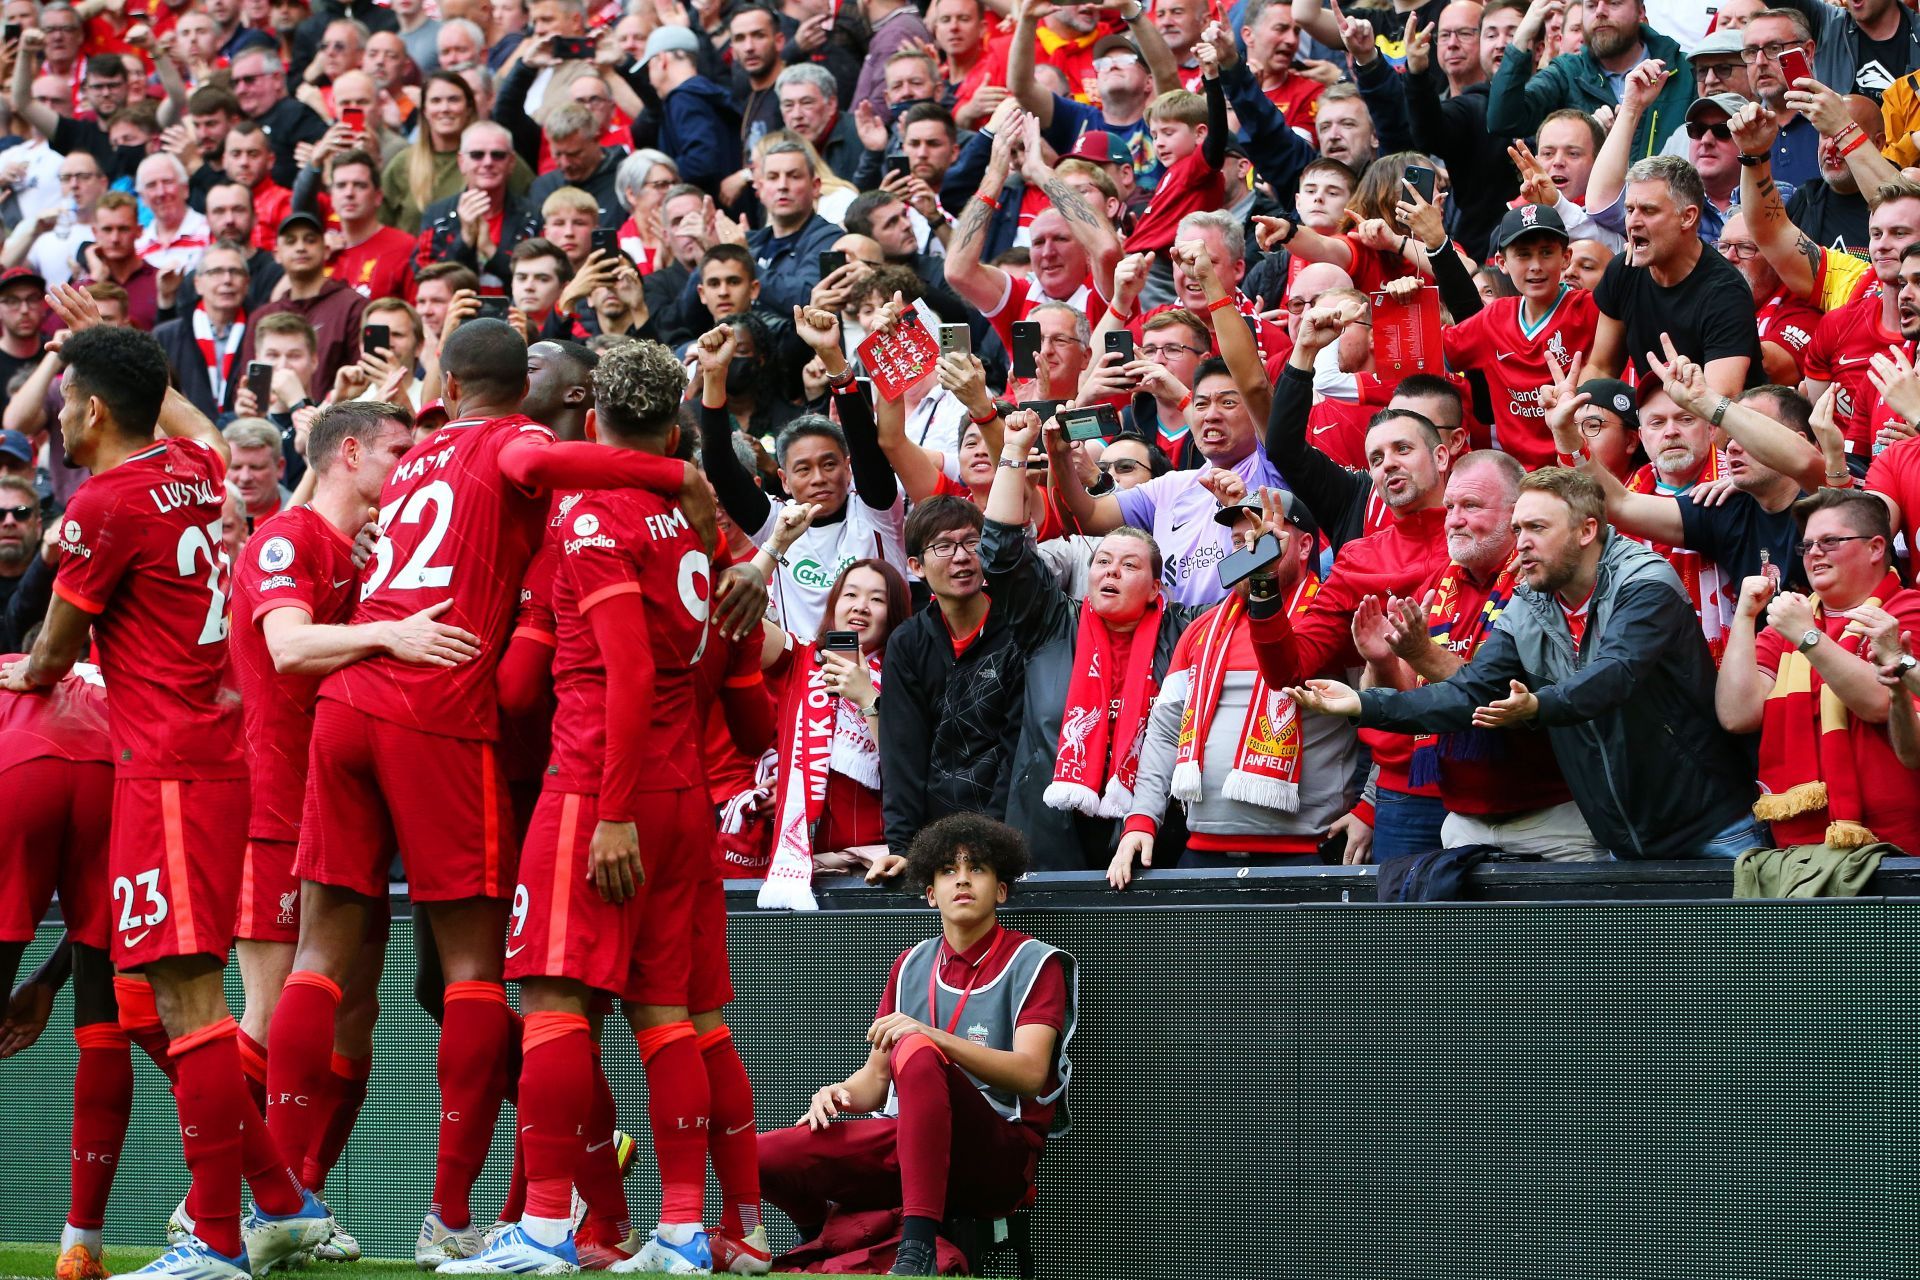 Liverpool are seeking a seventh European crown